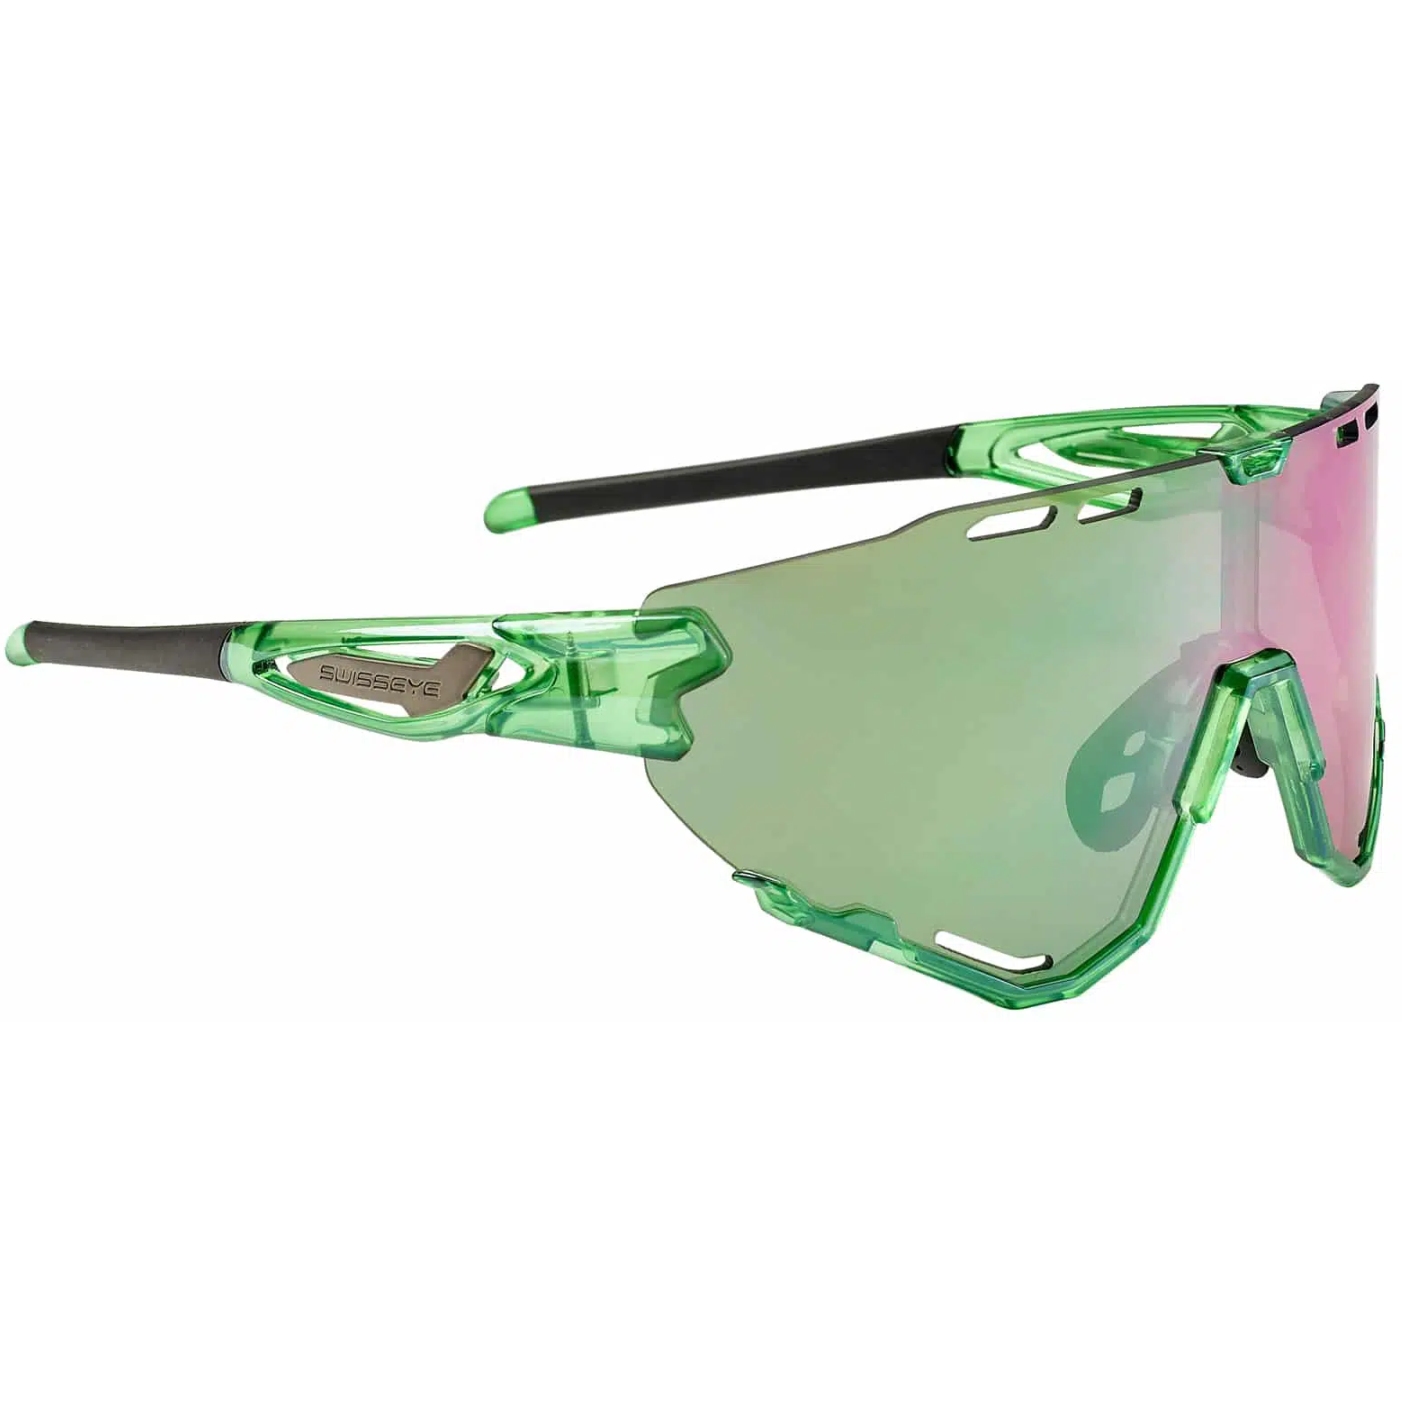 Produktbild von Swiss Eye Mantra Brille - Shiny Laser Green - Green Fluo-Green Revo 13027